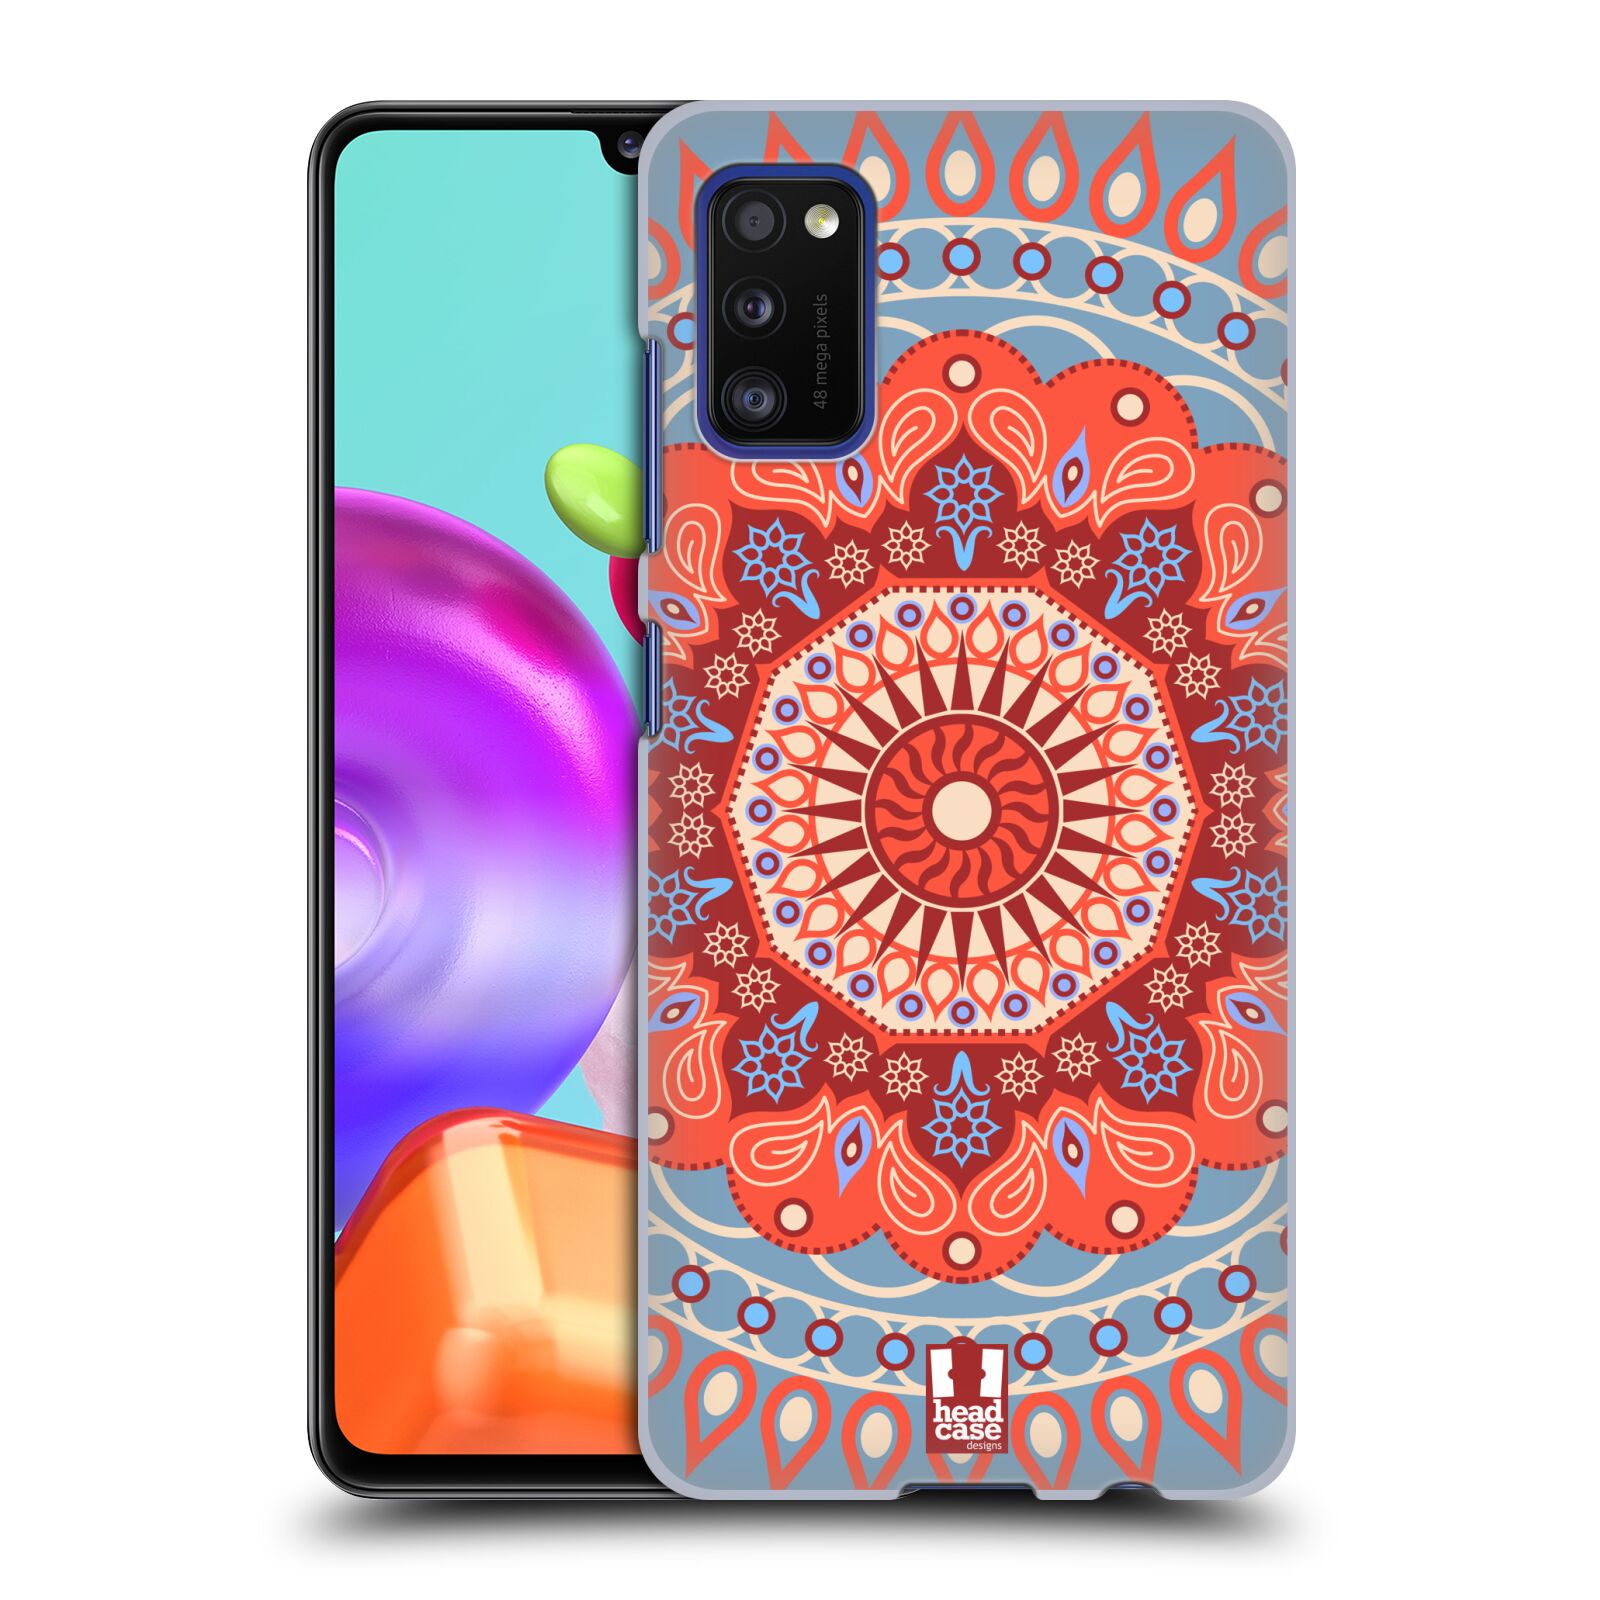 Zadní kryt na mobil Samsung Galaxy A41 vzor Indie Mandala slunce barevný motiv ČERVENÁ A MODRÁ